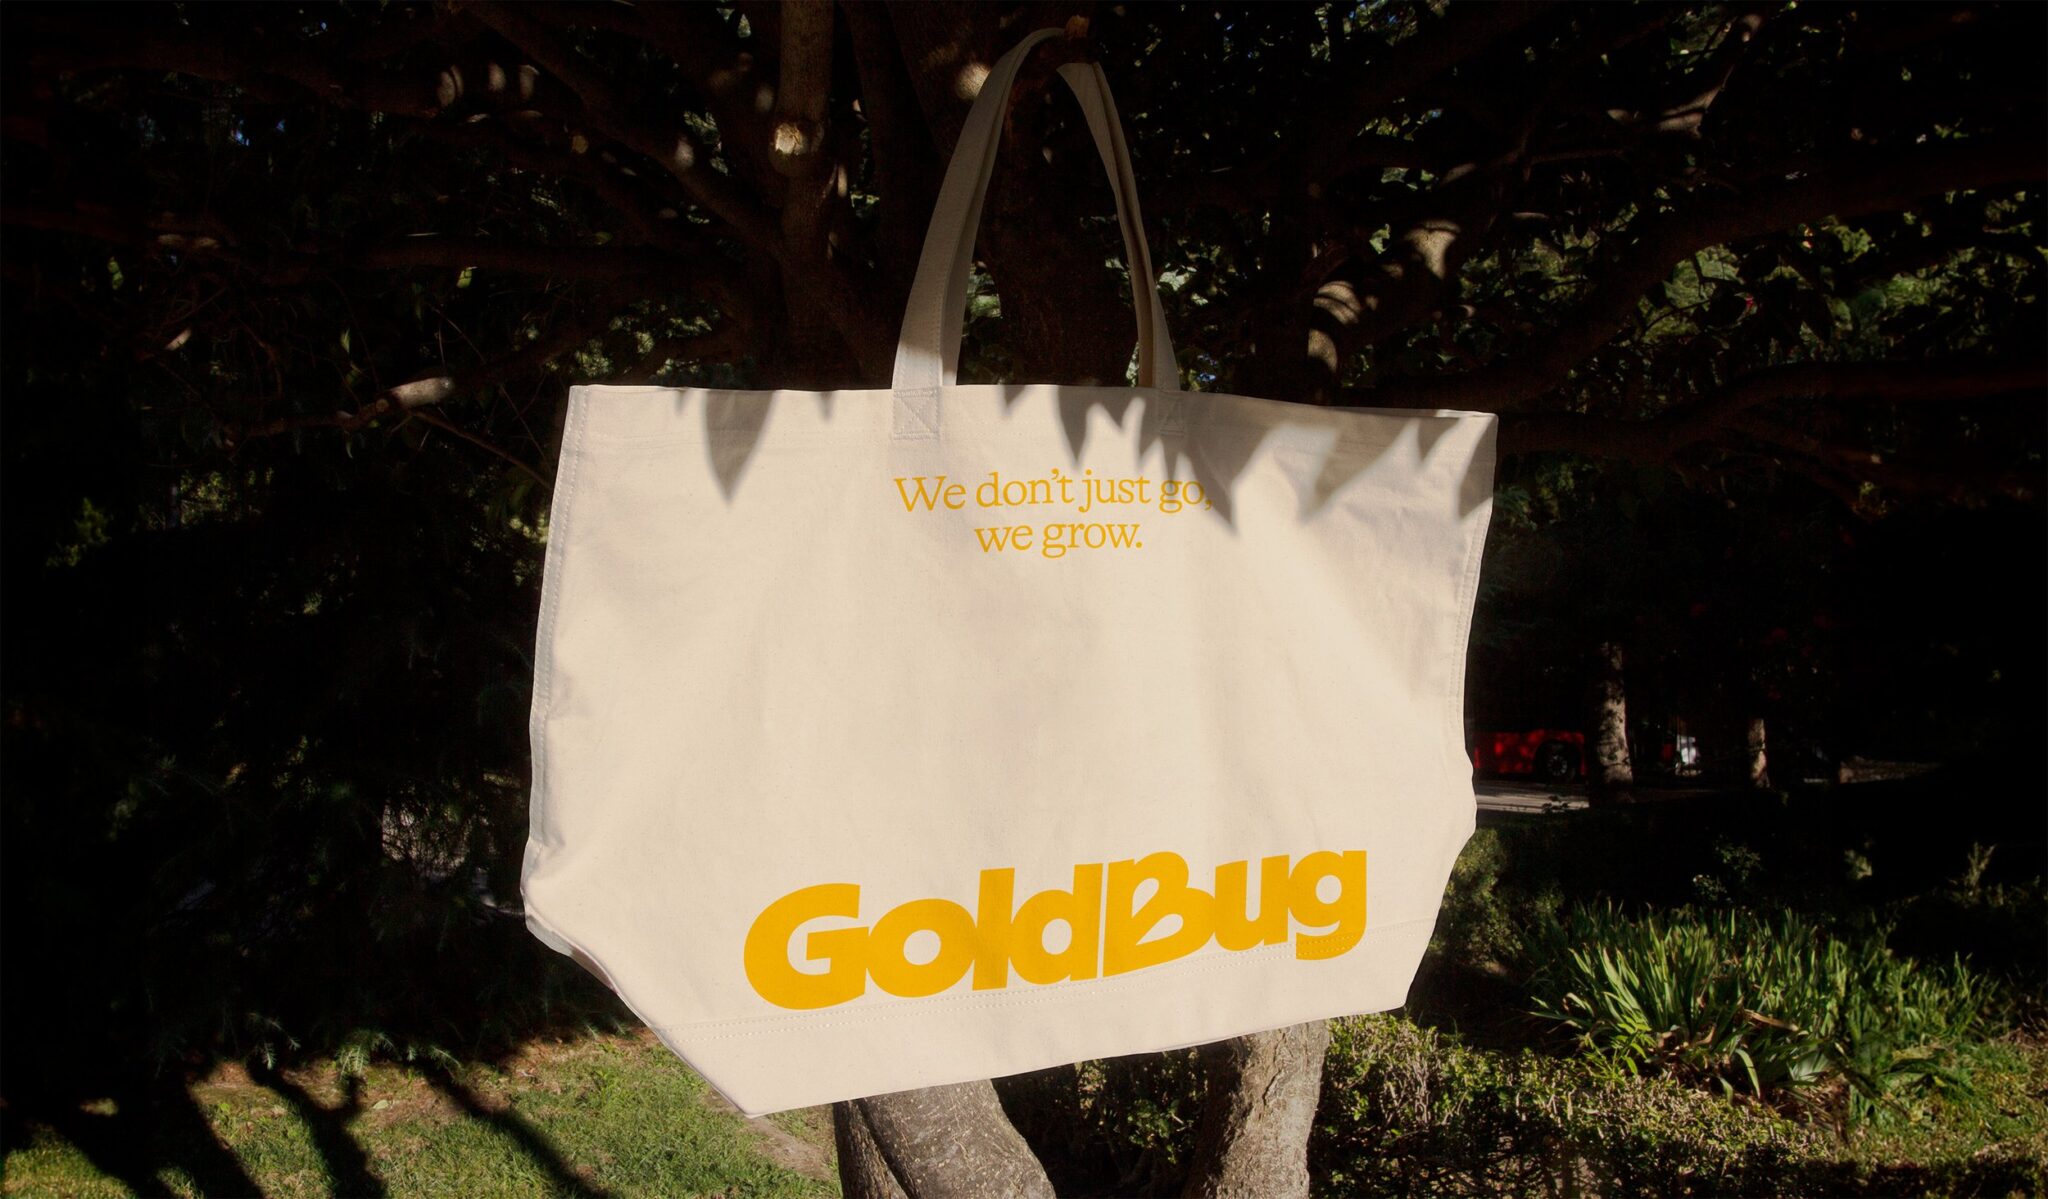 GoldBug's